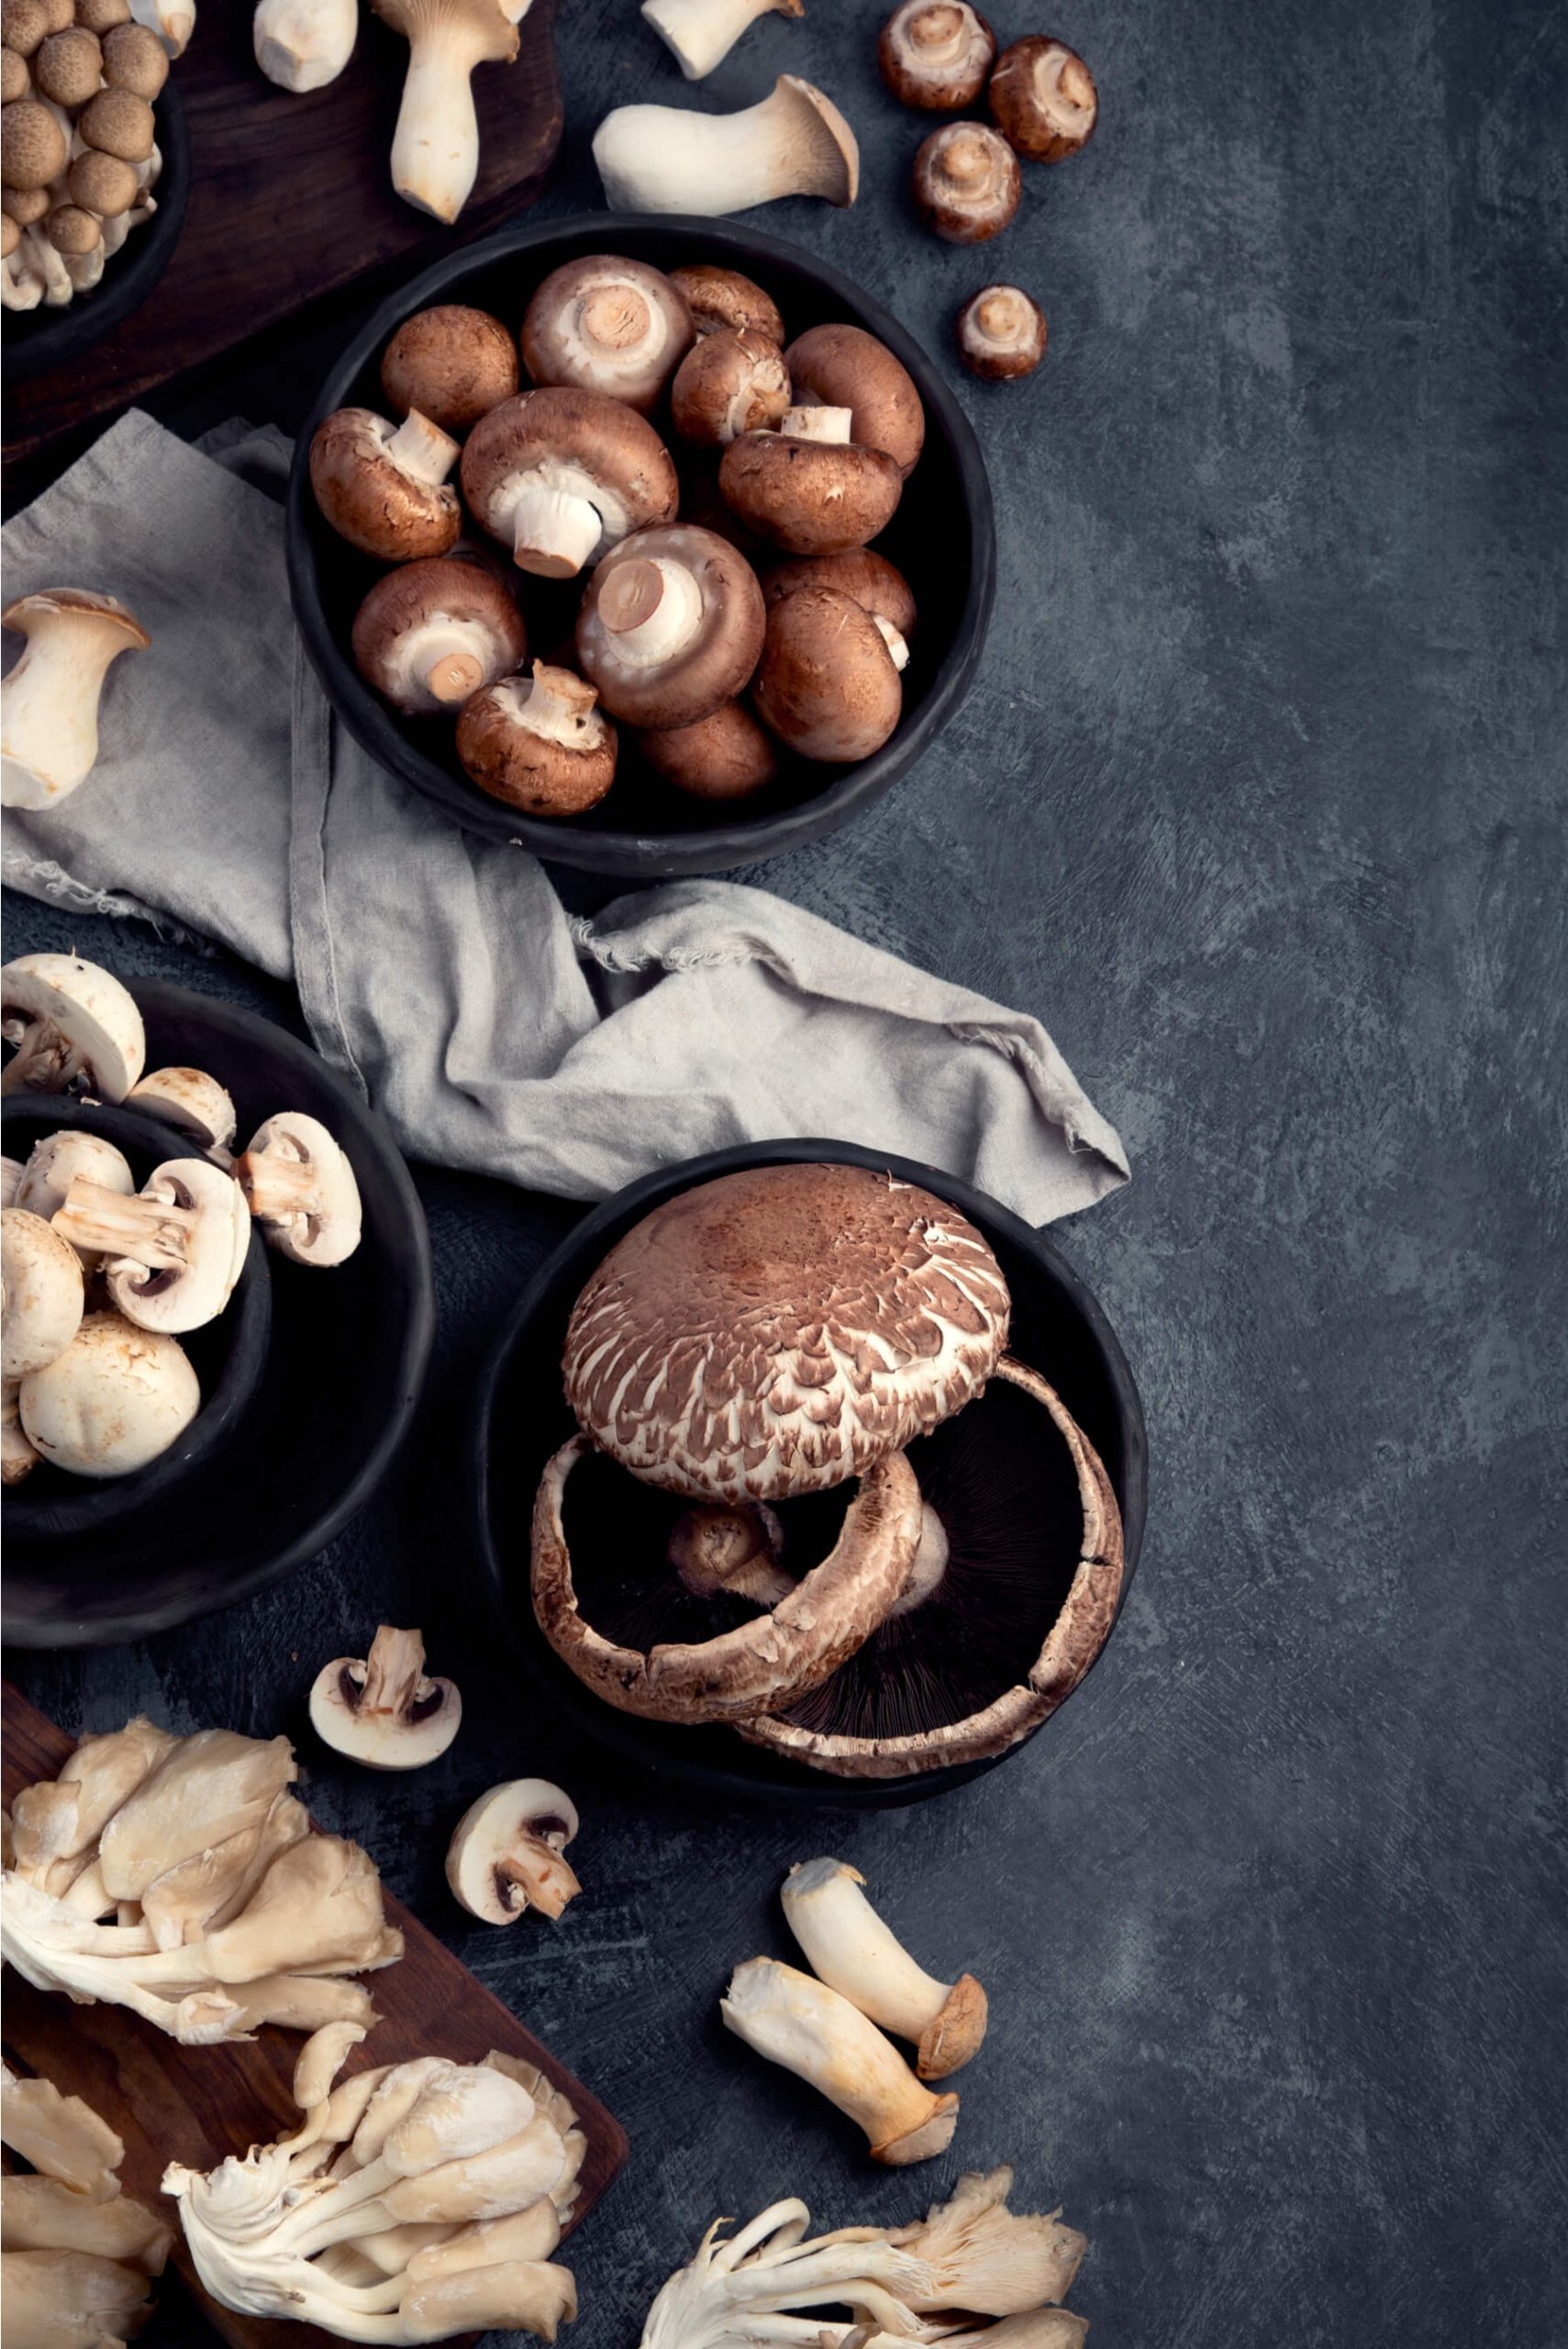 Edible mushrooms, Gourmet mushrooms, Mushroom types, Culinary delight, 1710x2560 HD Handy